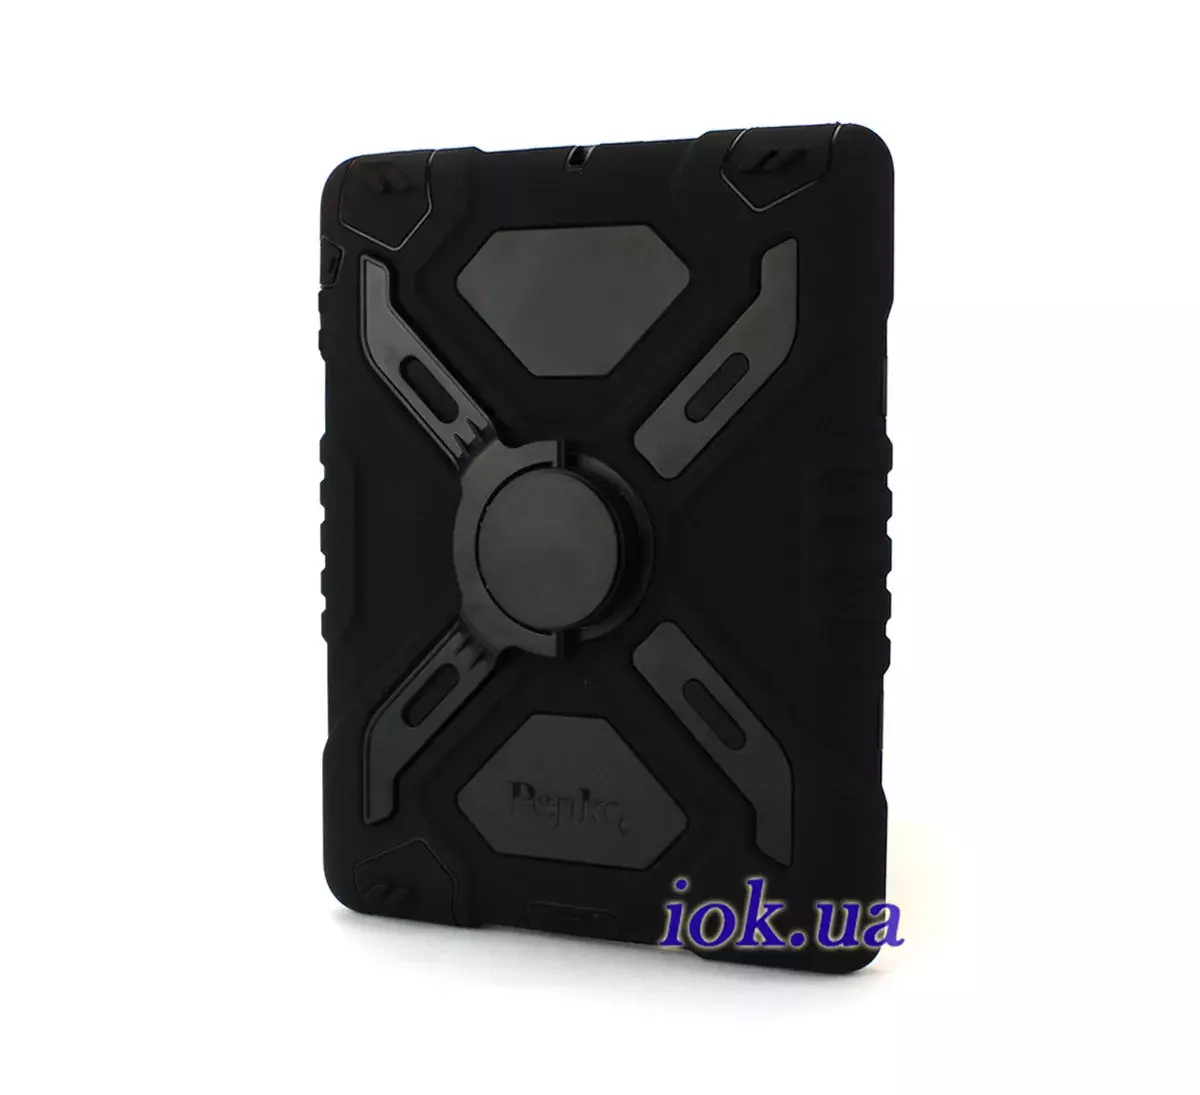 Бронированный резиновый чехол Pepkoo для iPad 2/3/4 - черный